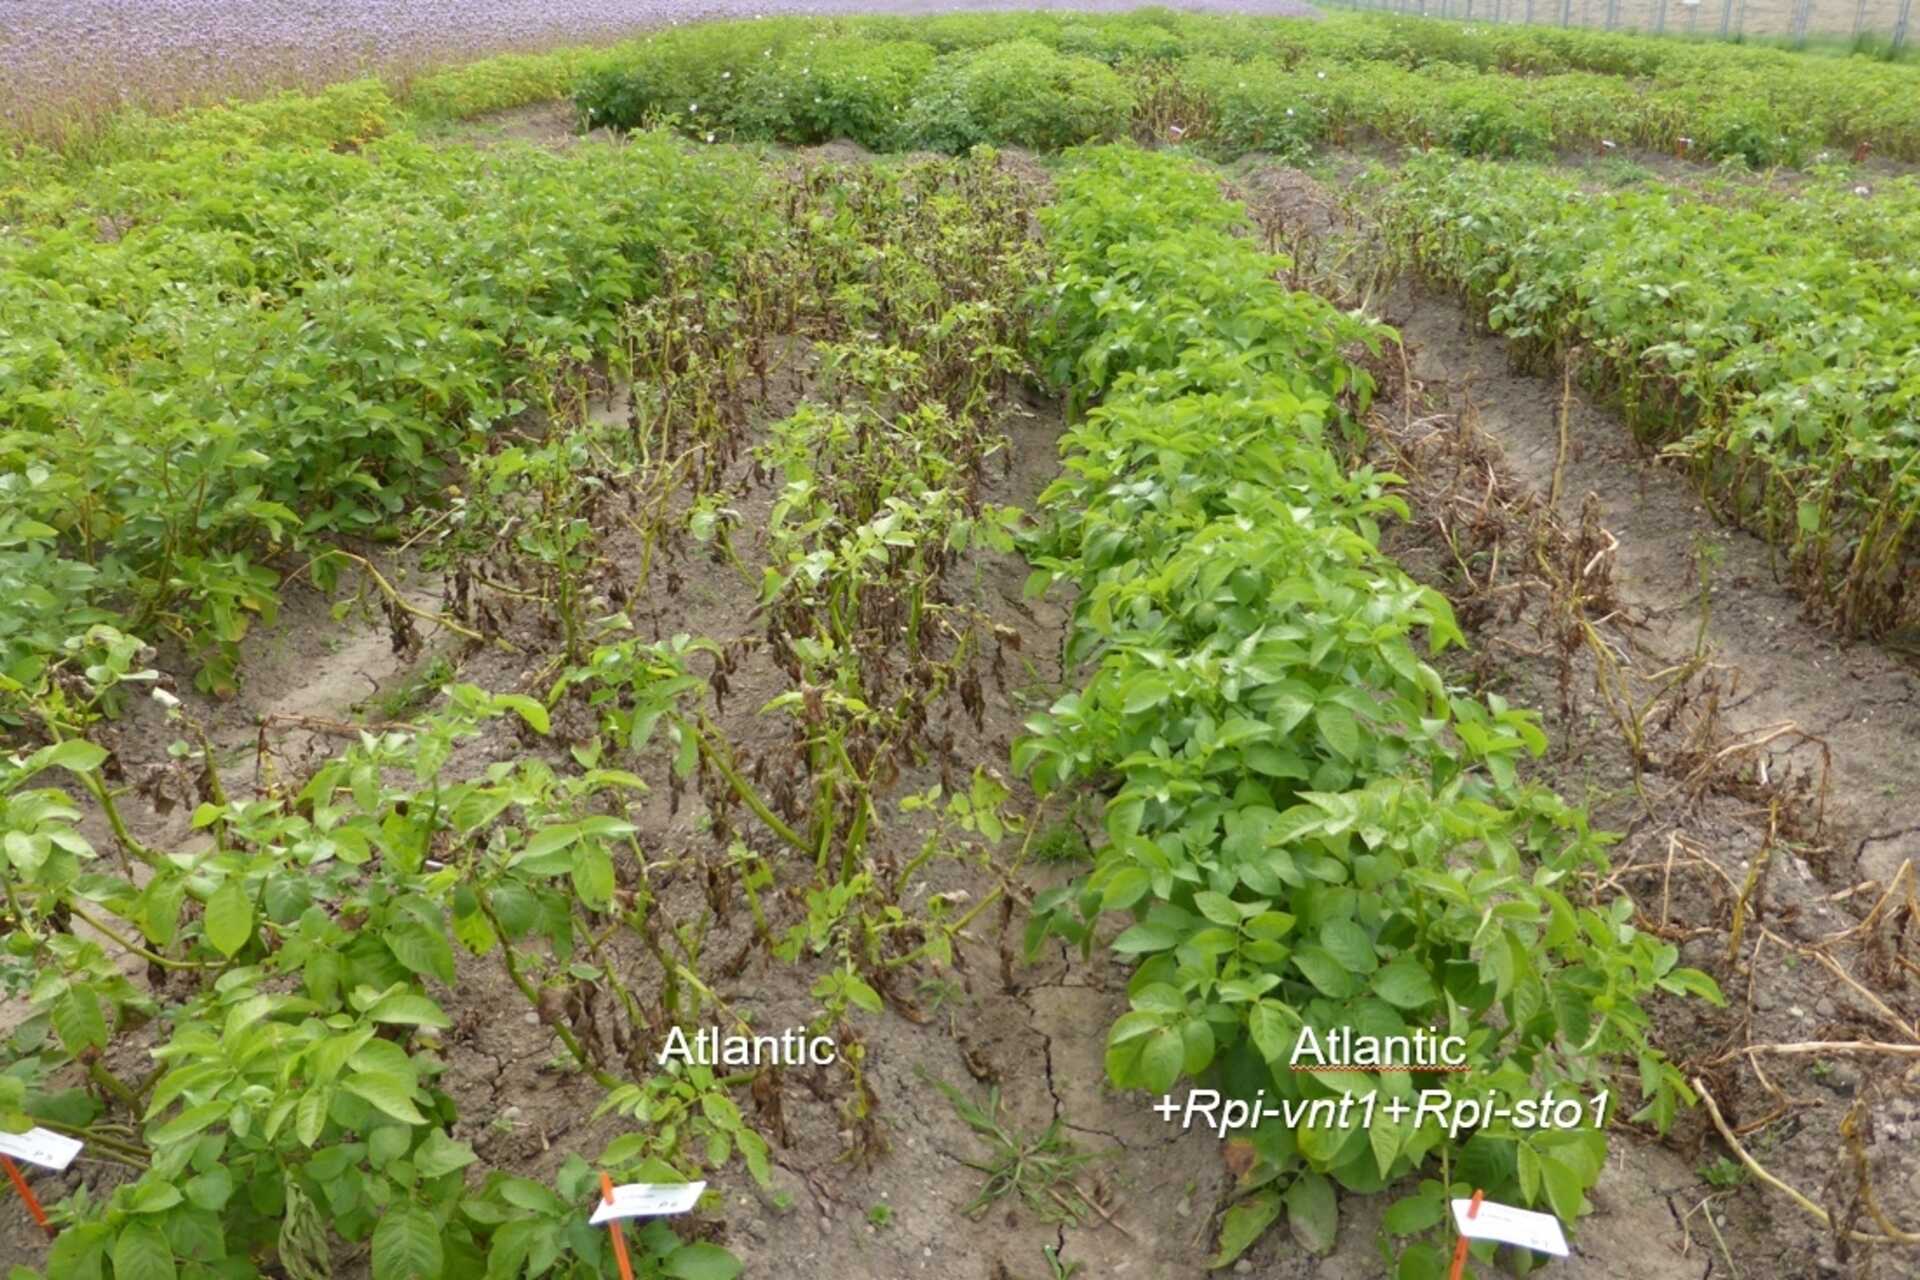 Genetski modificirani ječam: Agroscope će steći više od tri godine znanja o ponašanju biljaka na otvorenim poljima na lokaciji Reckenholz (Curich) uz ovlaštenje Saveznog ureda za okoliš